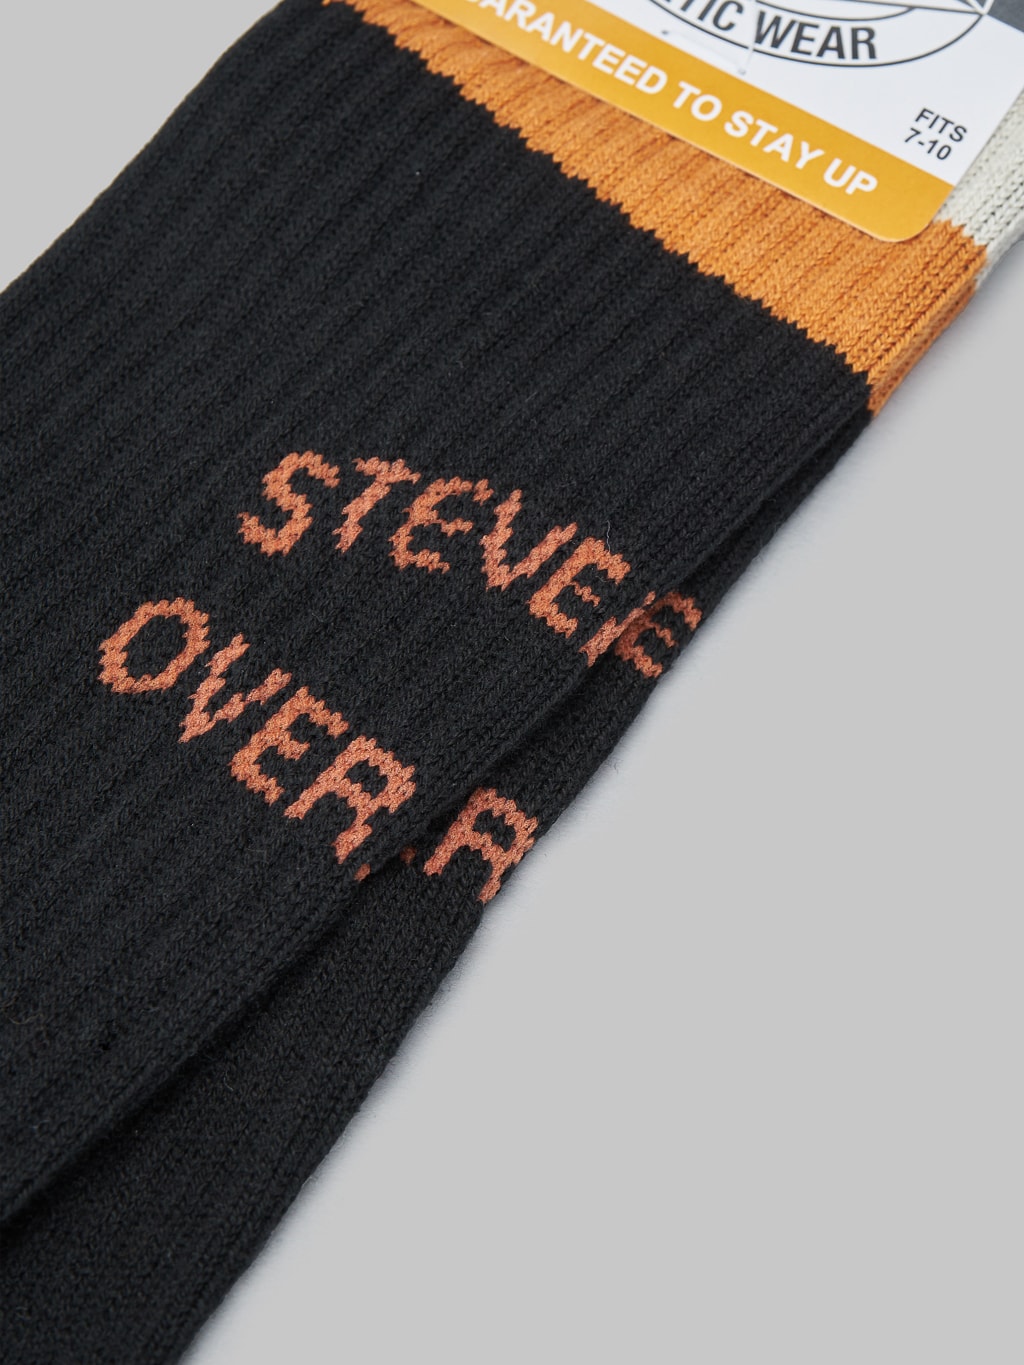 Stevenson Overall Athletic Socks black woven logo